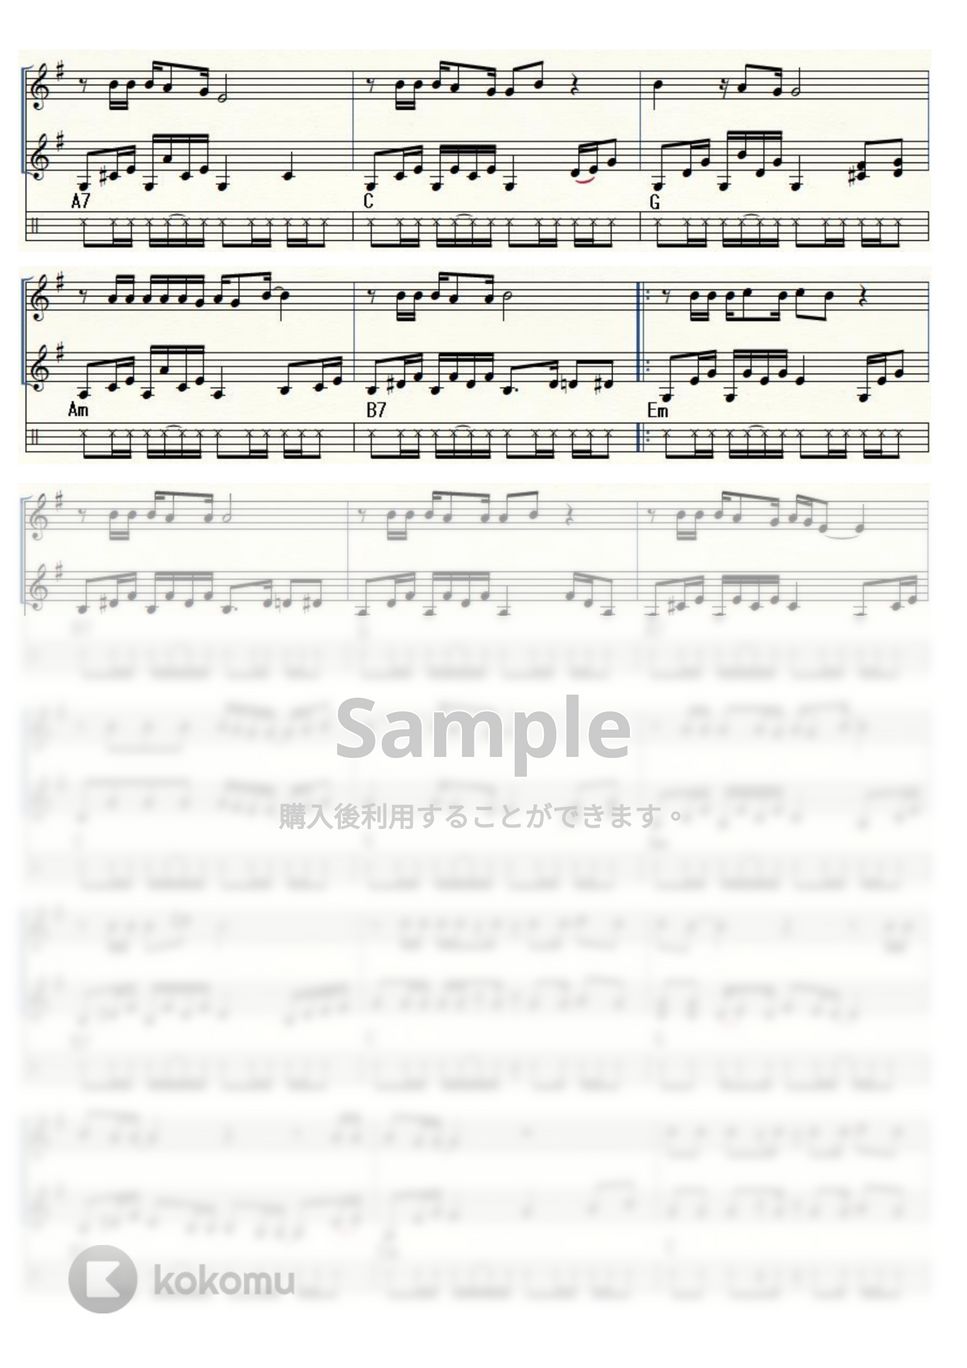 イーグルス - ホテル・カリフォルニア (ウクレレ三重奏 / High-G・Low-G / 上級) by ukulelepapa